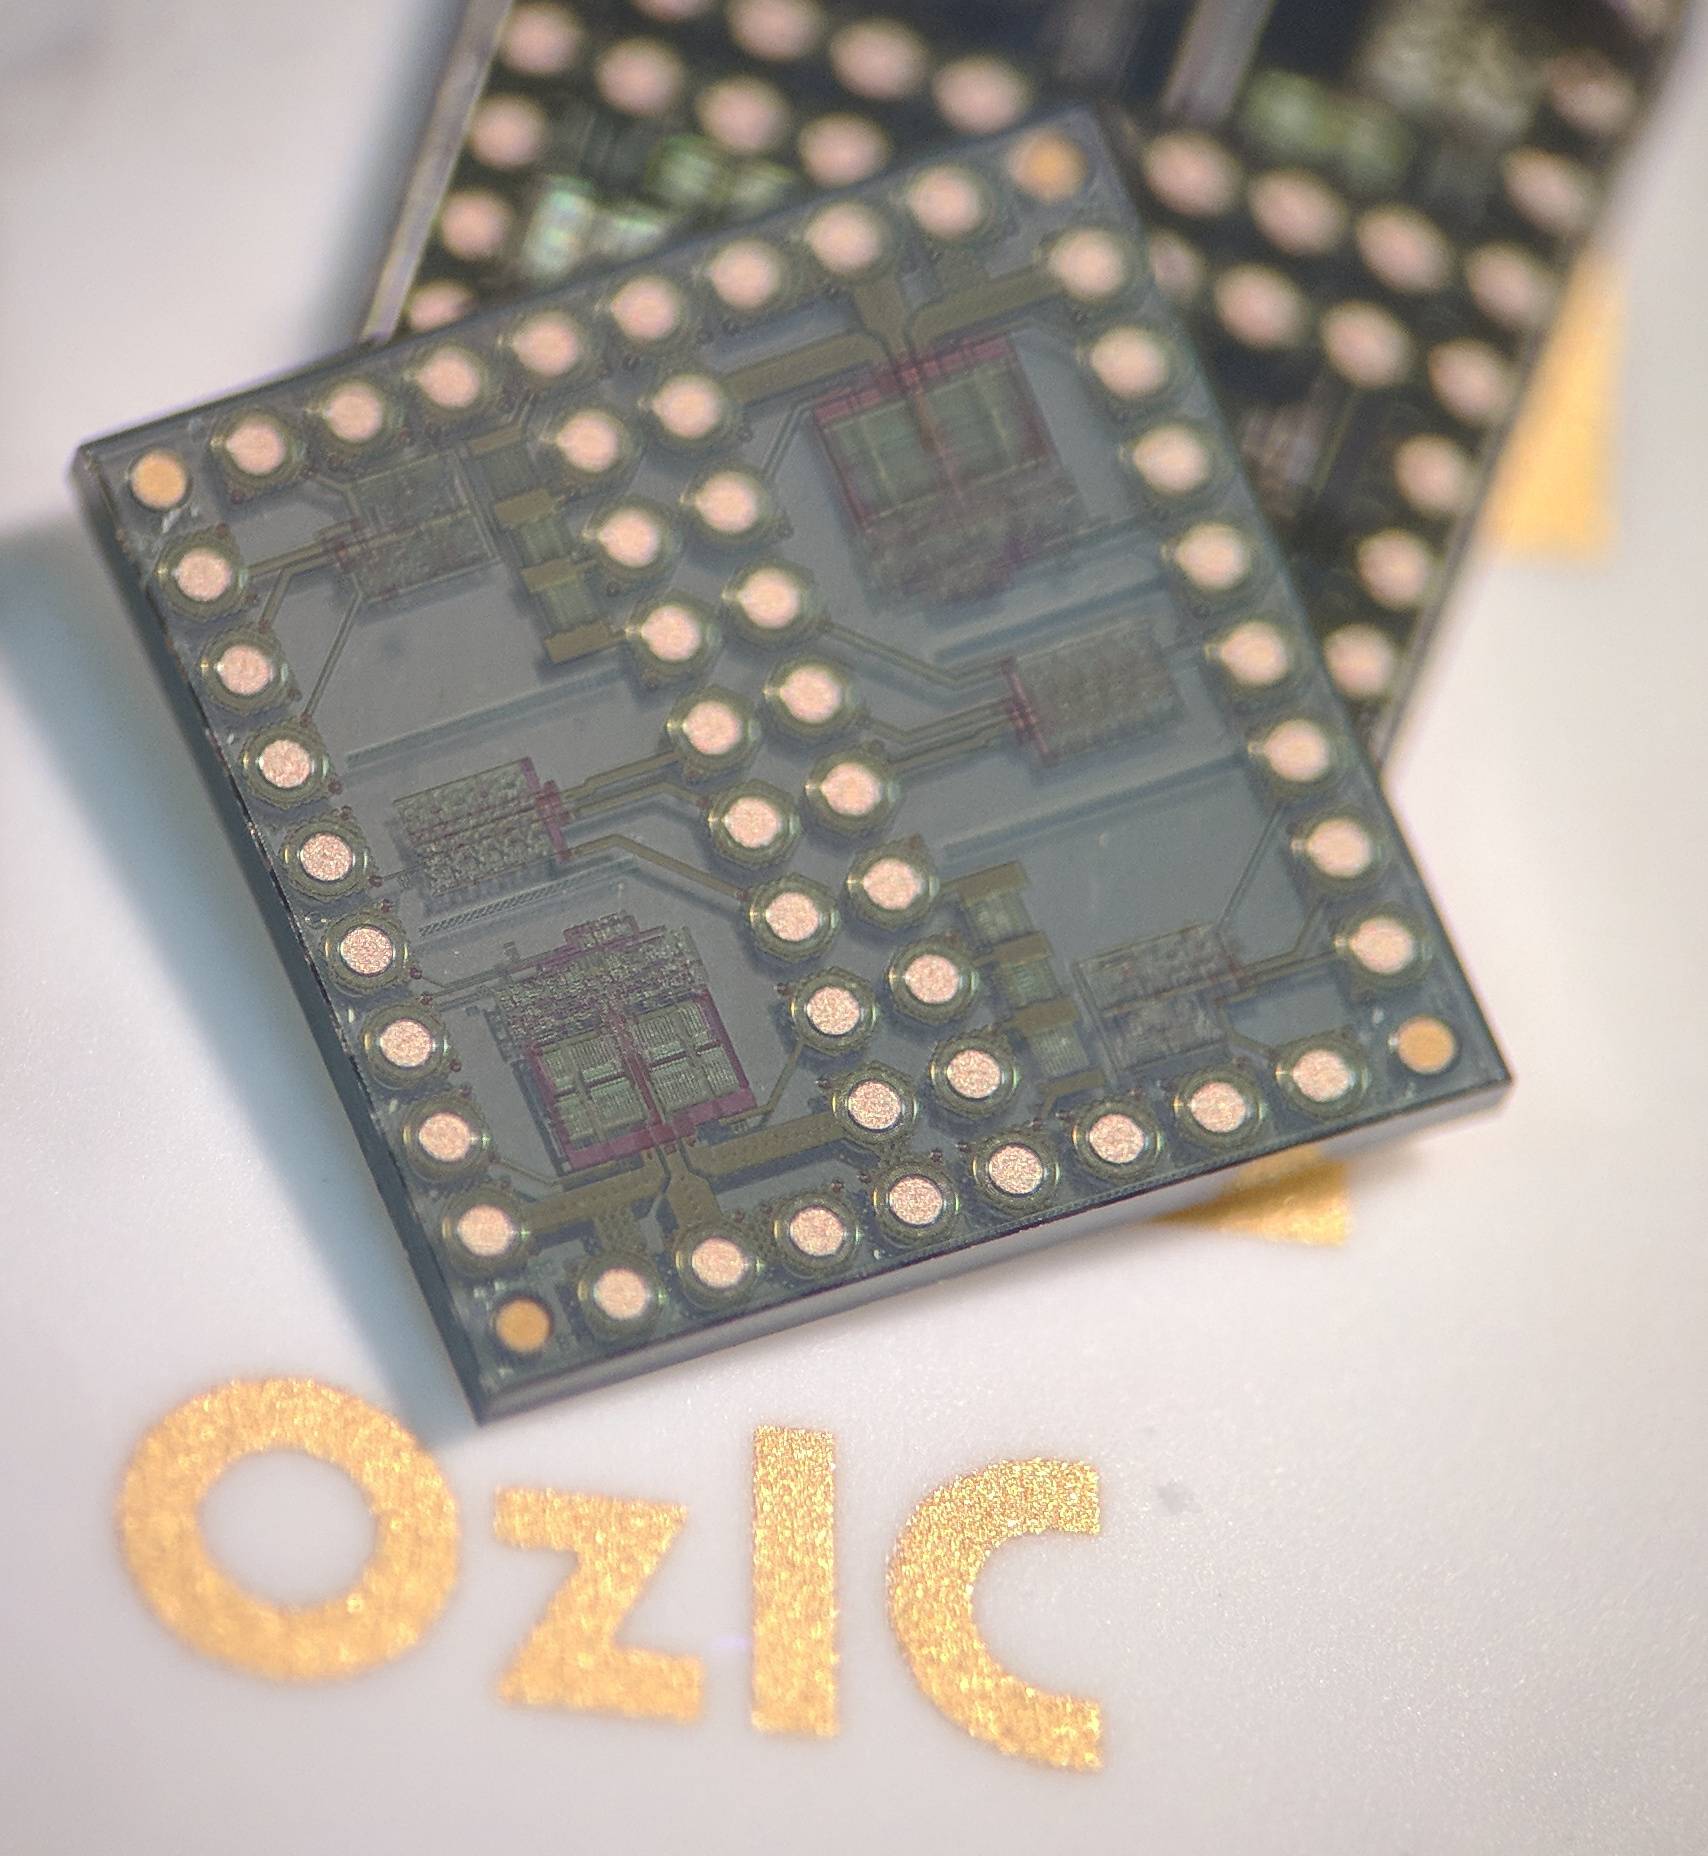 Ozark Integrated Circuits Phase II SBIR award